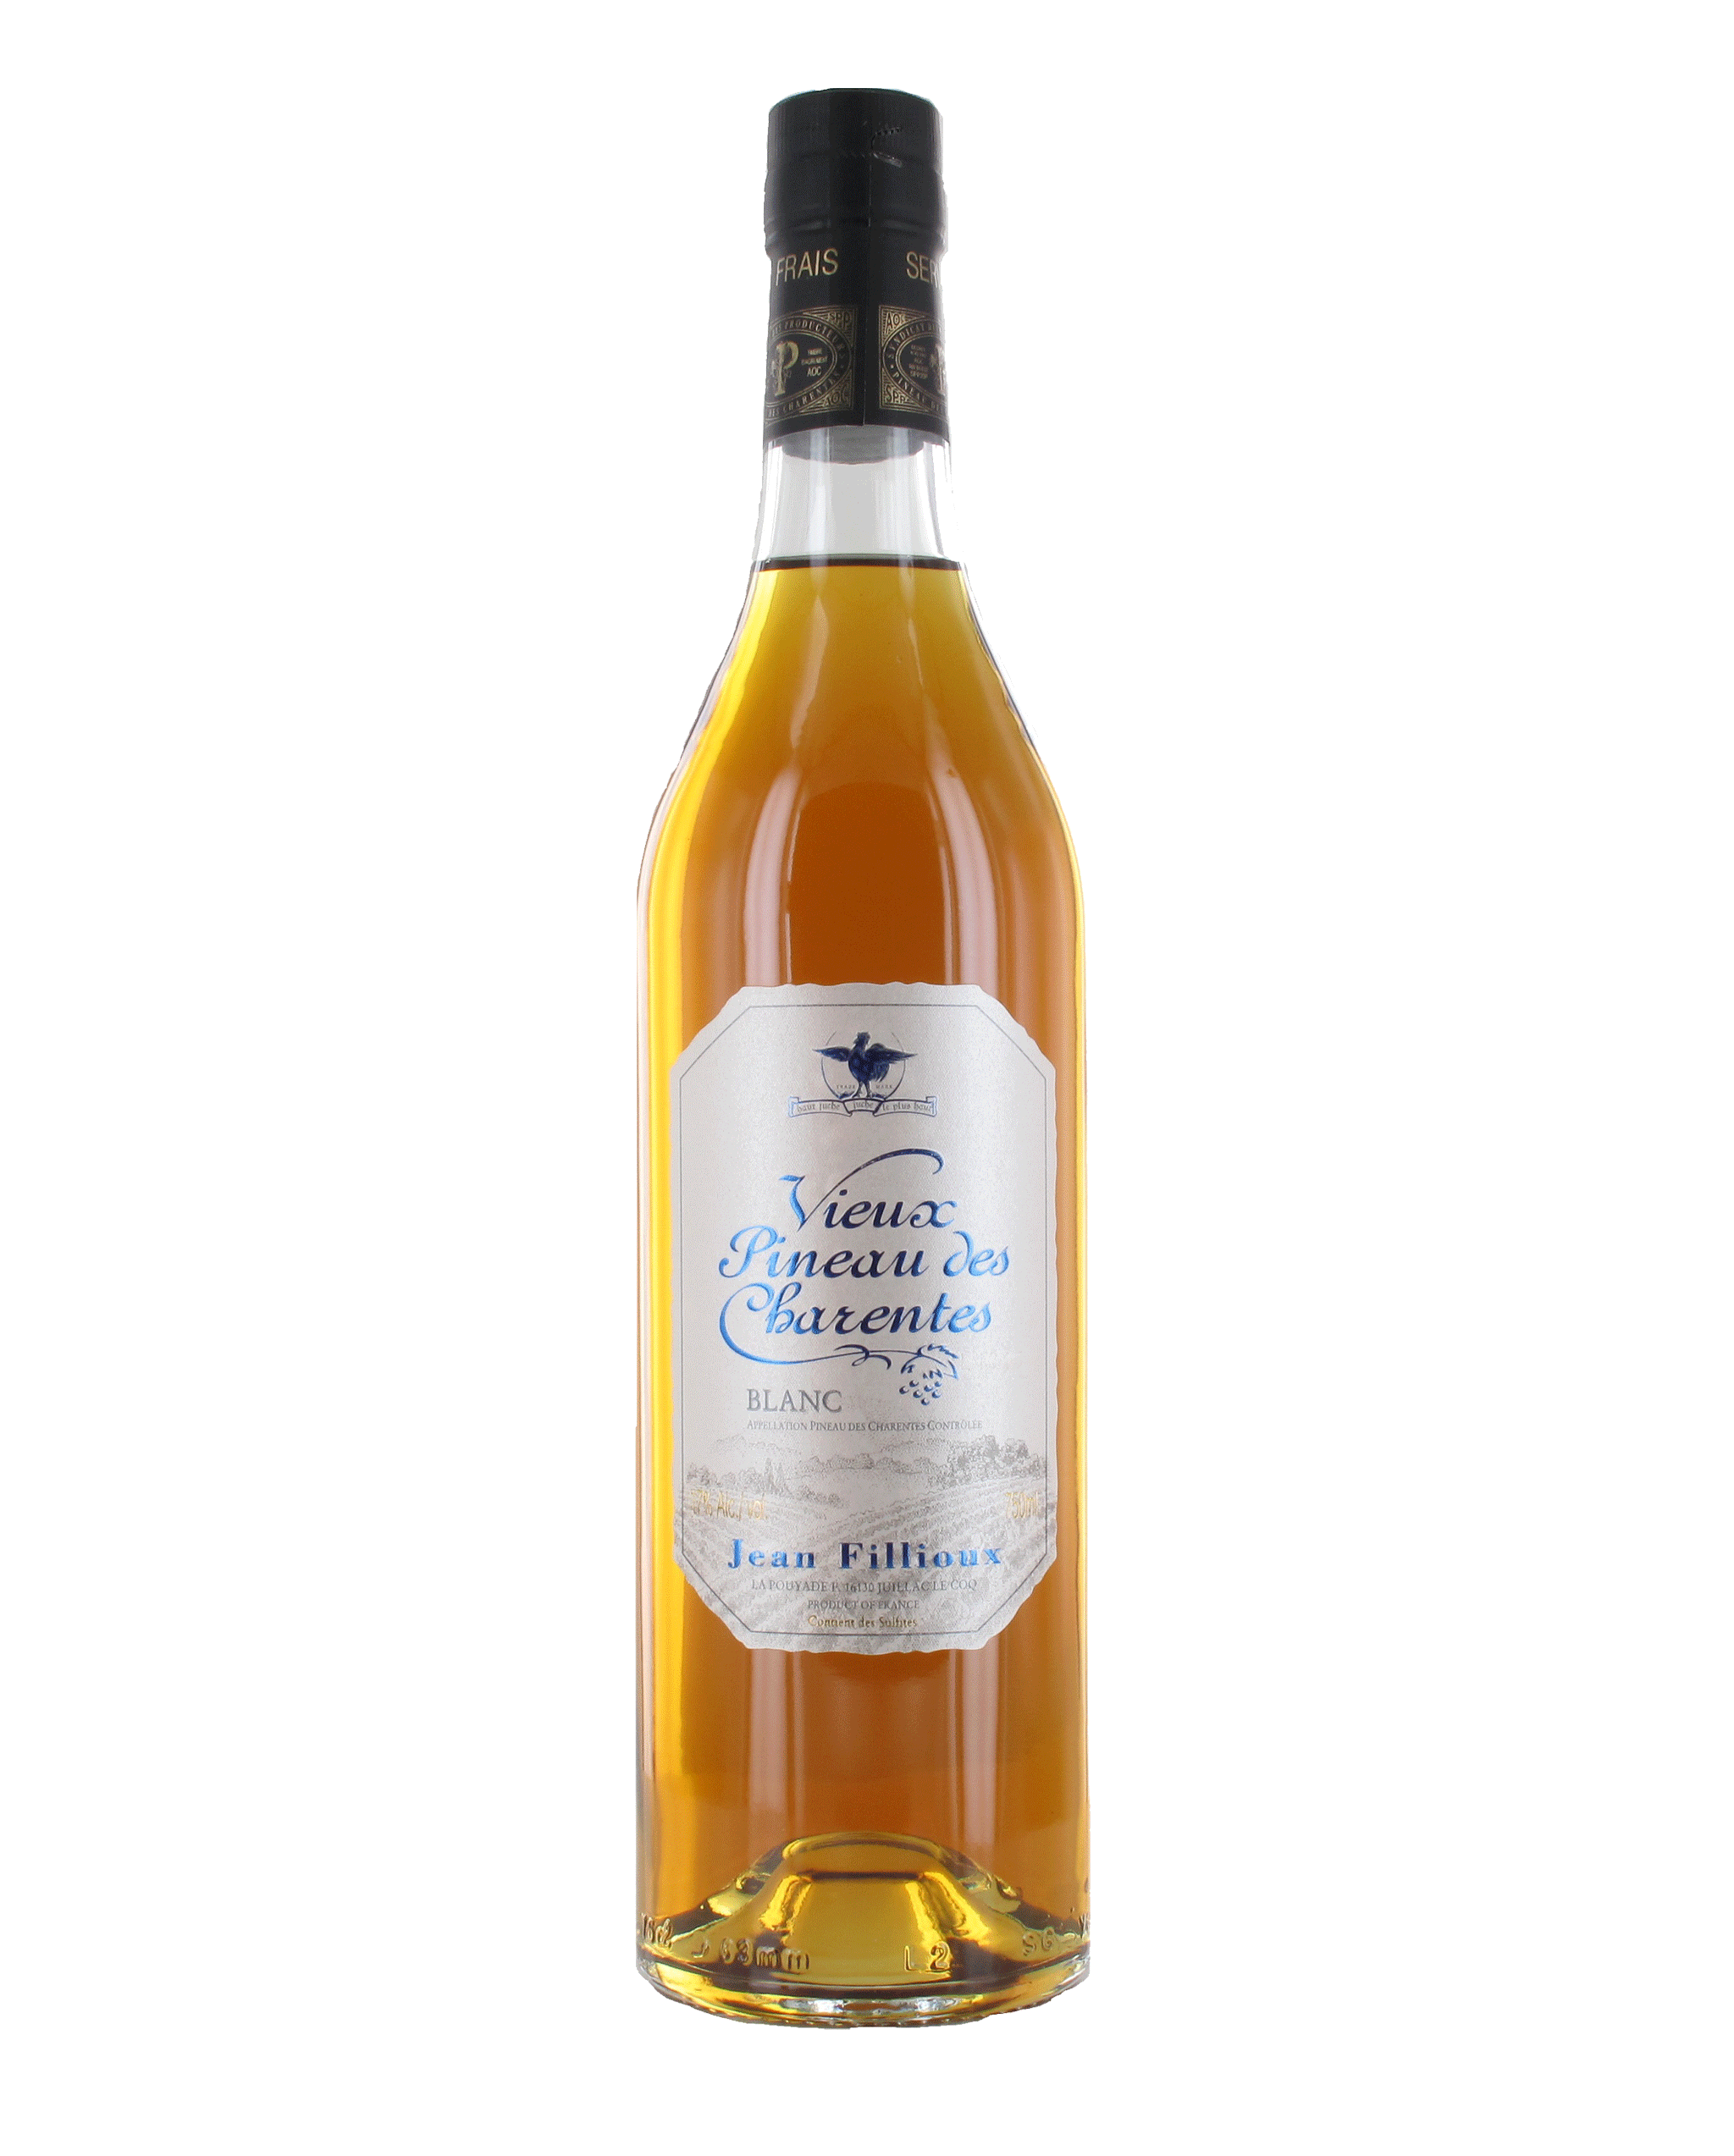 Cognac Jean Fillioux Vieux Pineau des Charentes